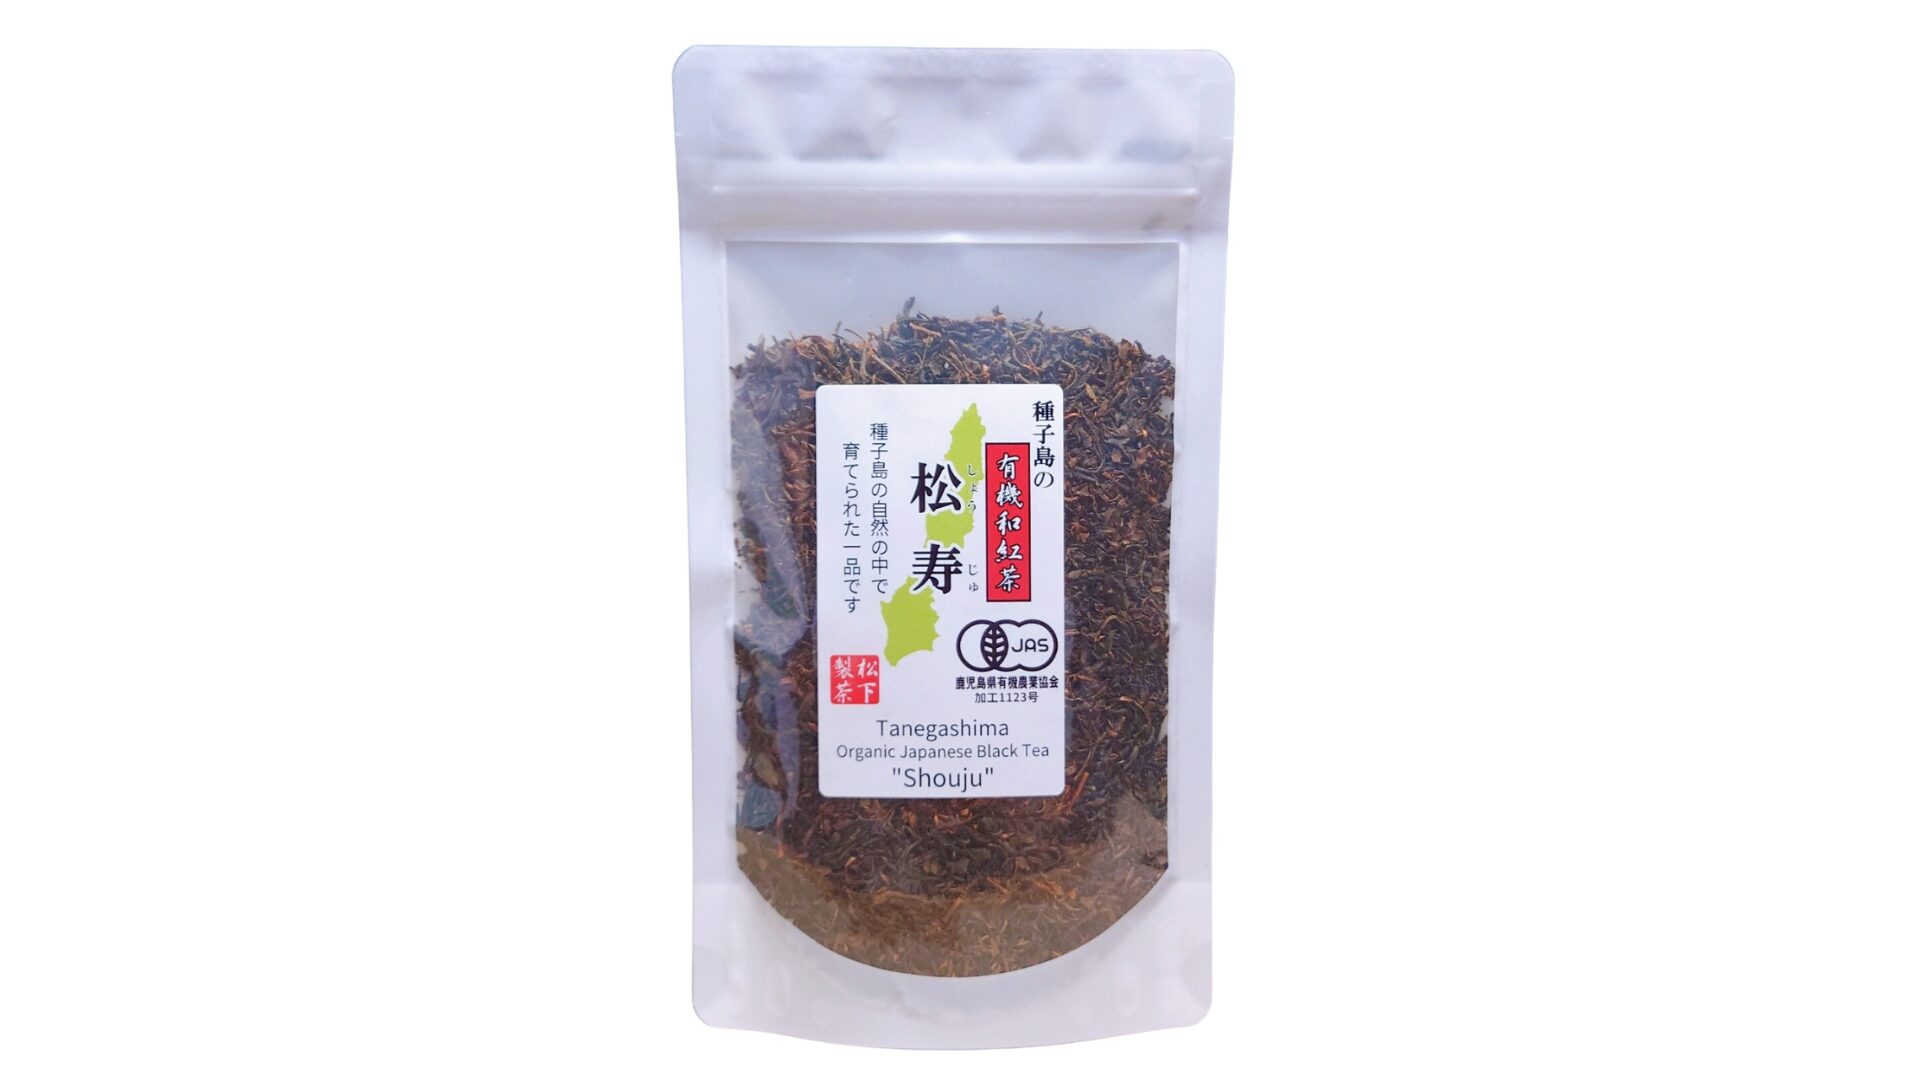 松下製茶 種子島の有機和紅茶『松寿(しょうじゅ)』 茶葉(リーフ) 60g